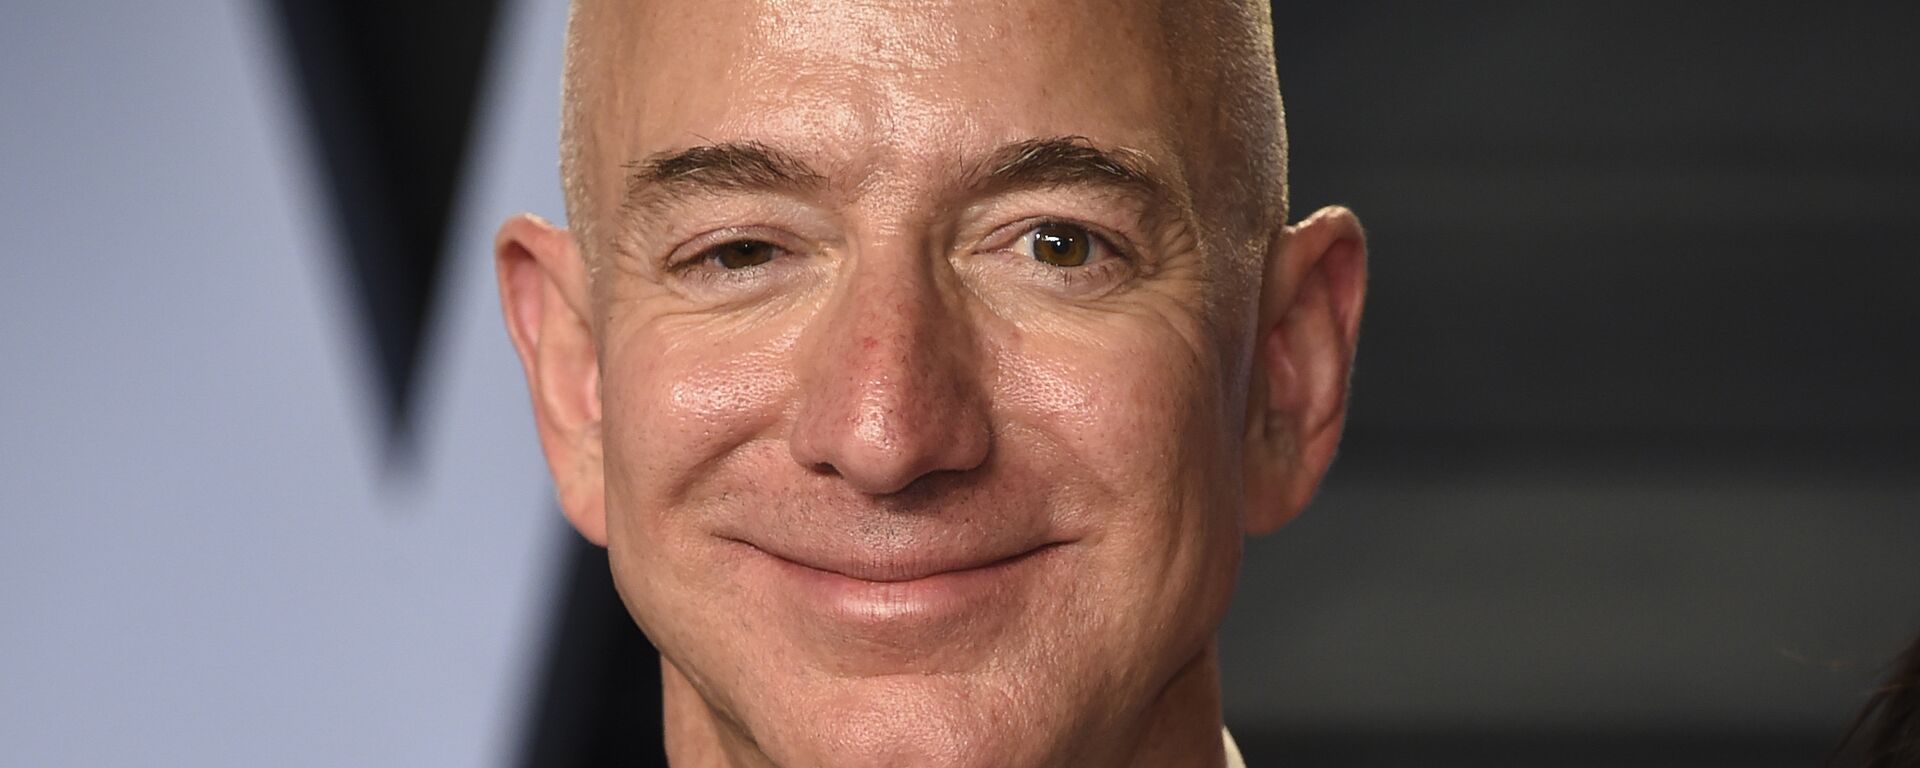 Jeff Bezos, milmillonario estadounidense - Sputnik Mundo, 1920, 24.07.2021